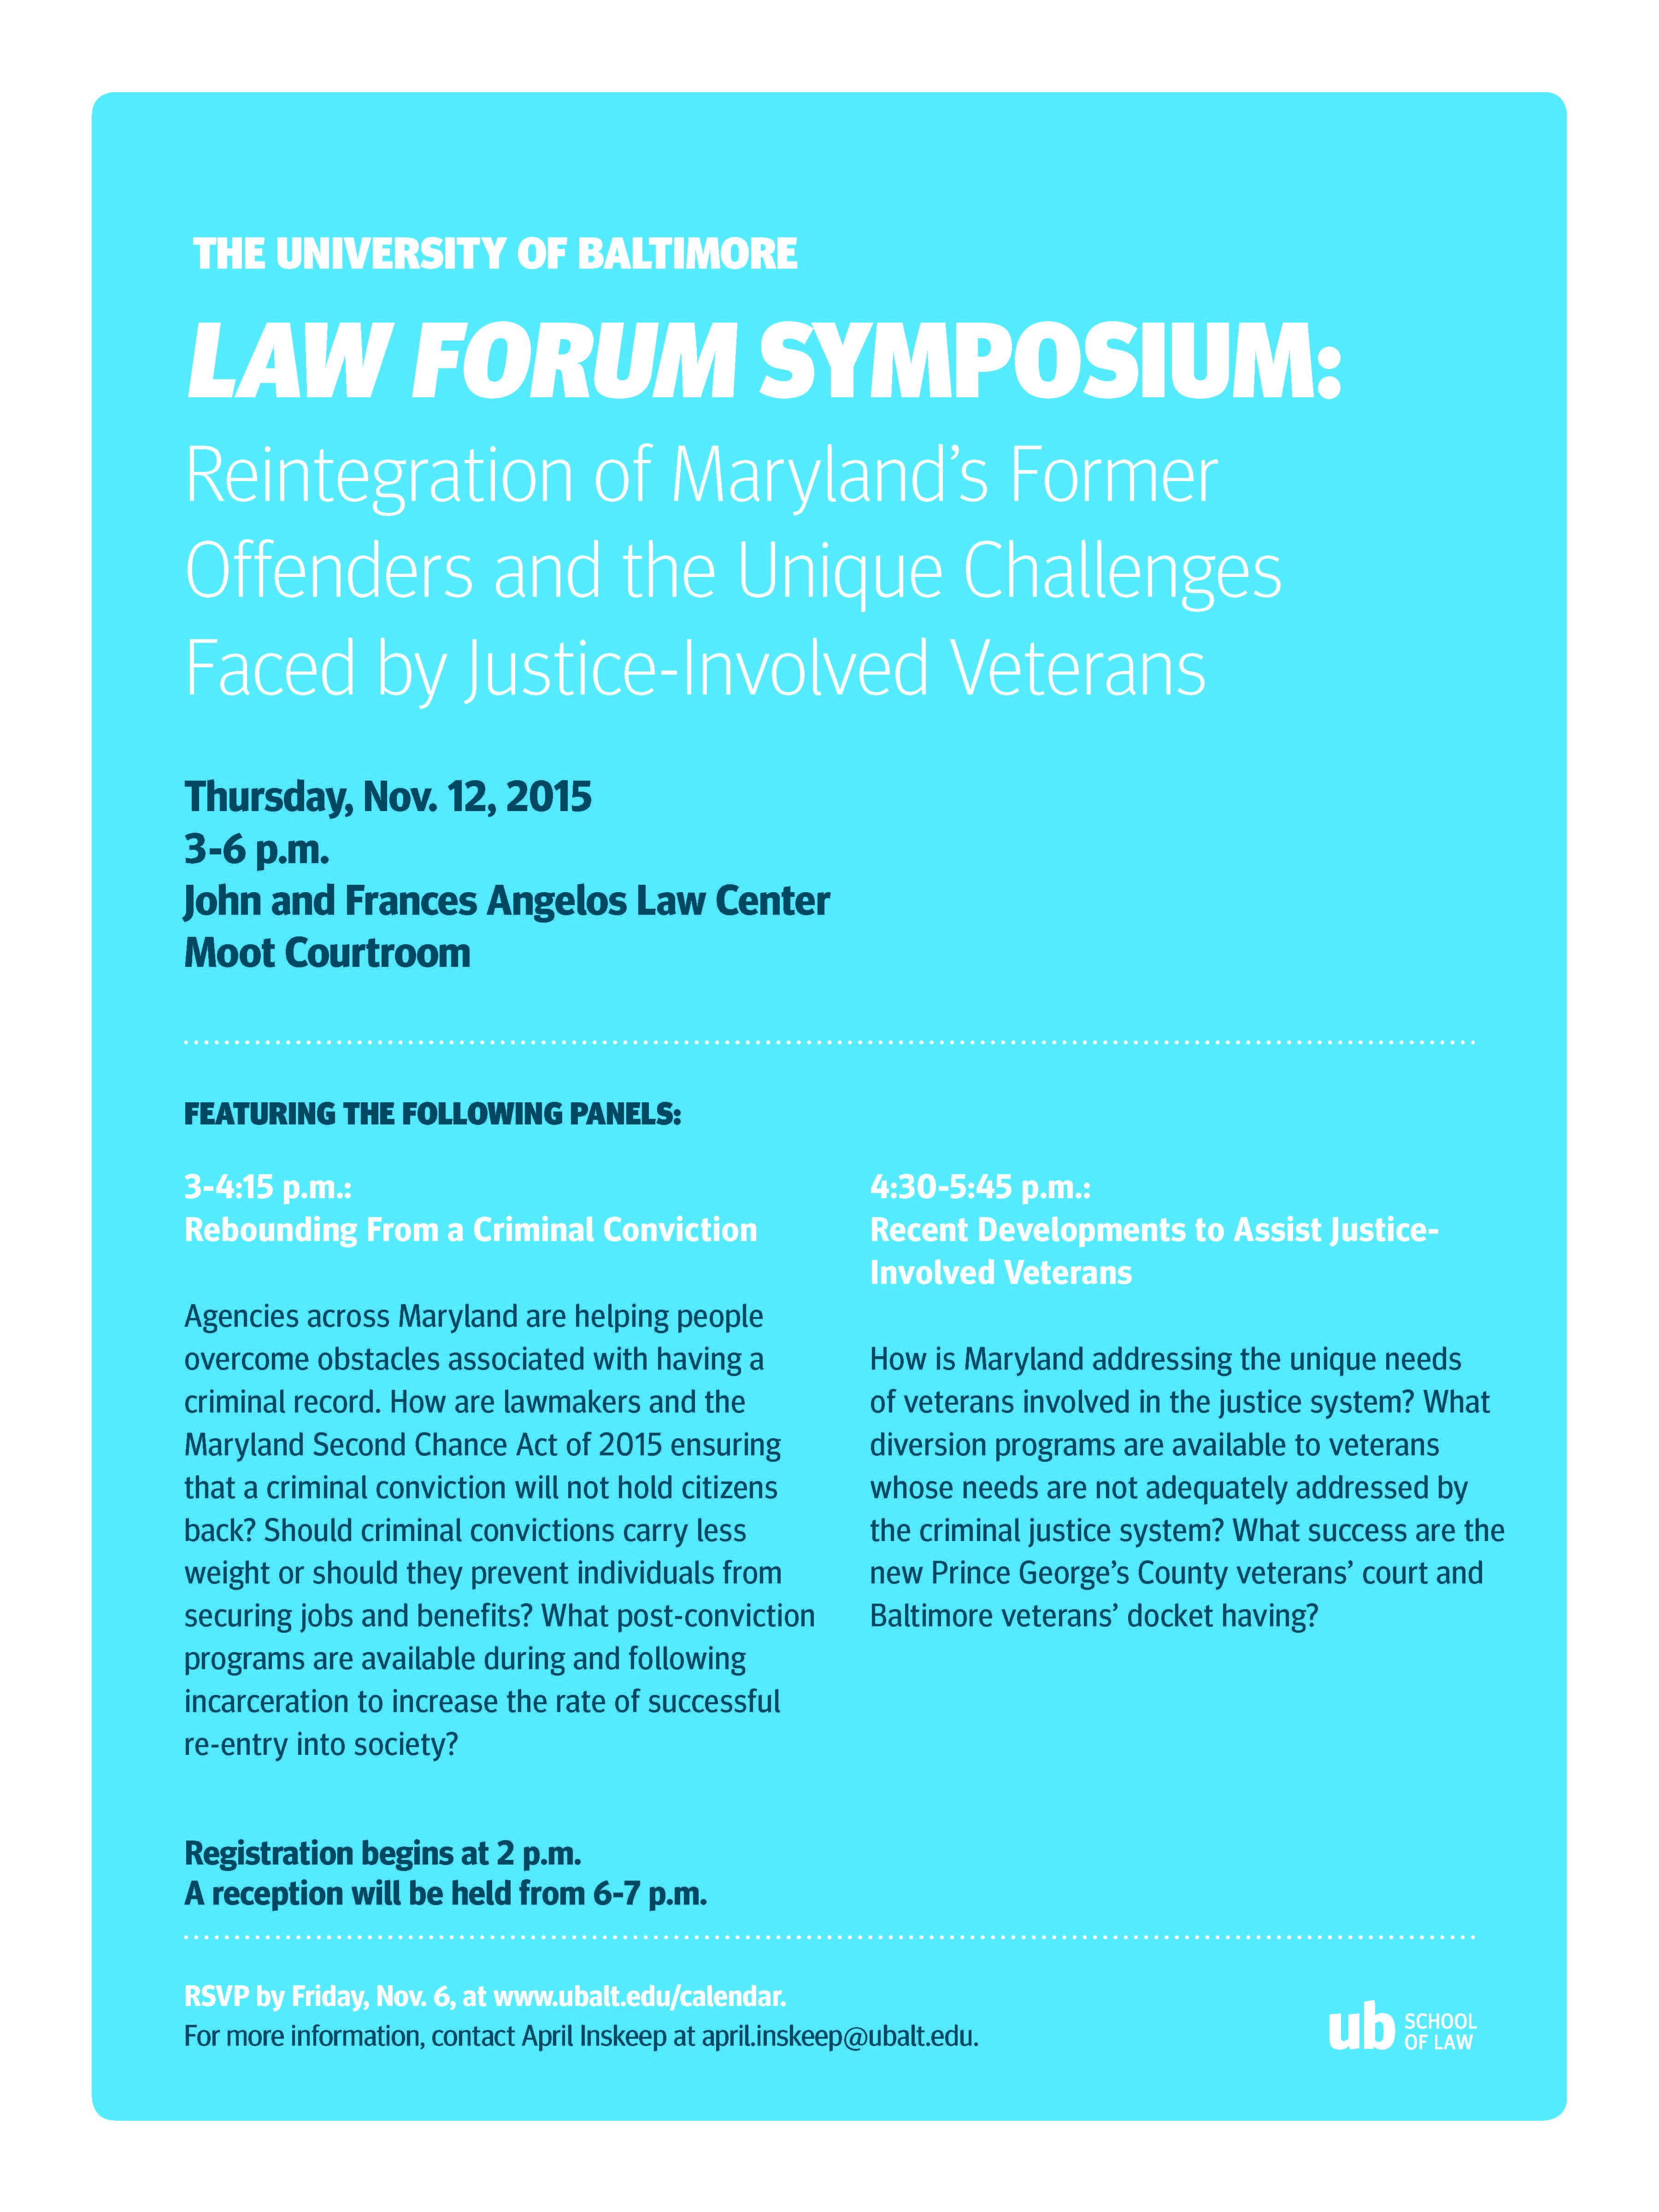 Law Forum 2015 Symposium